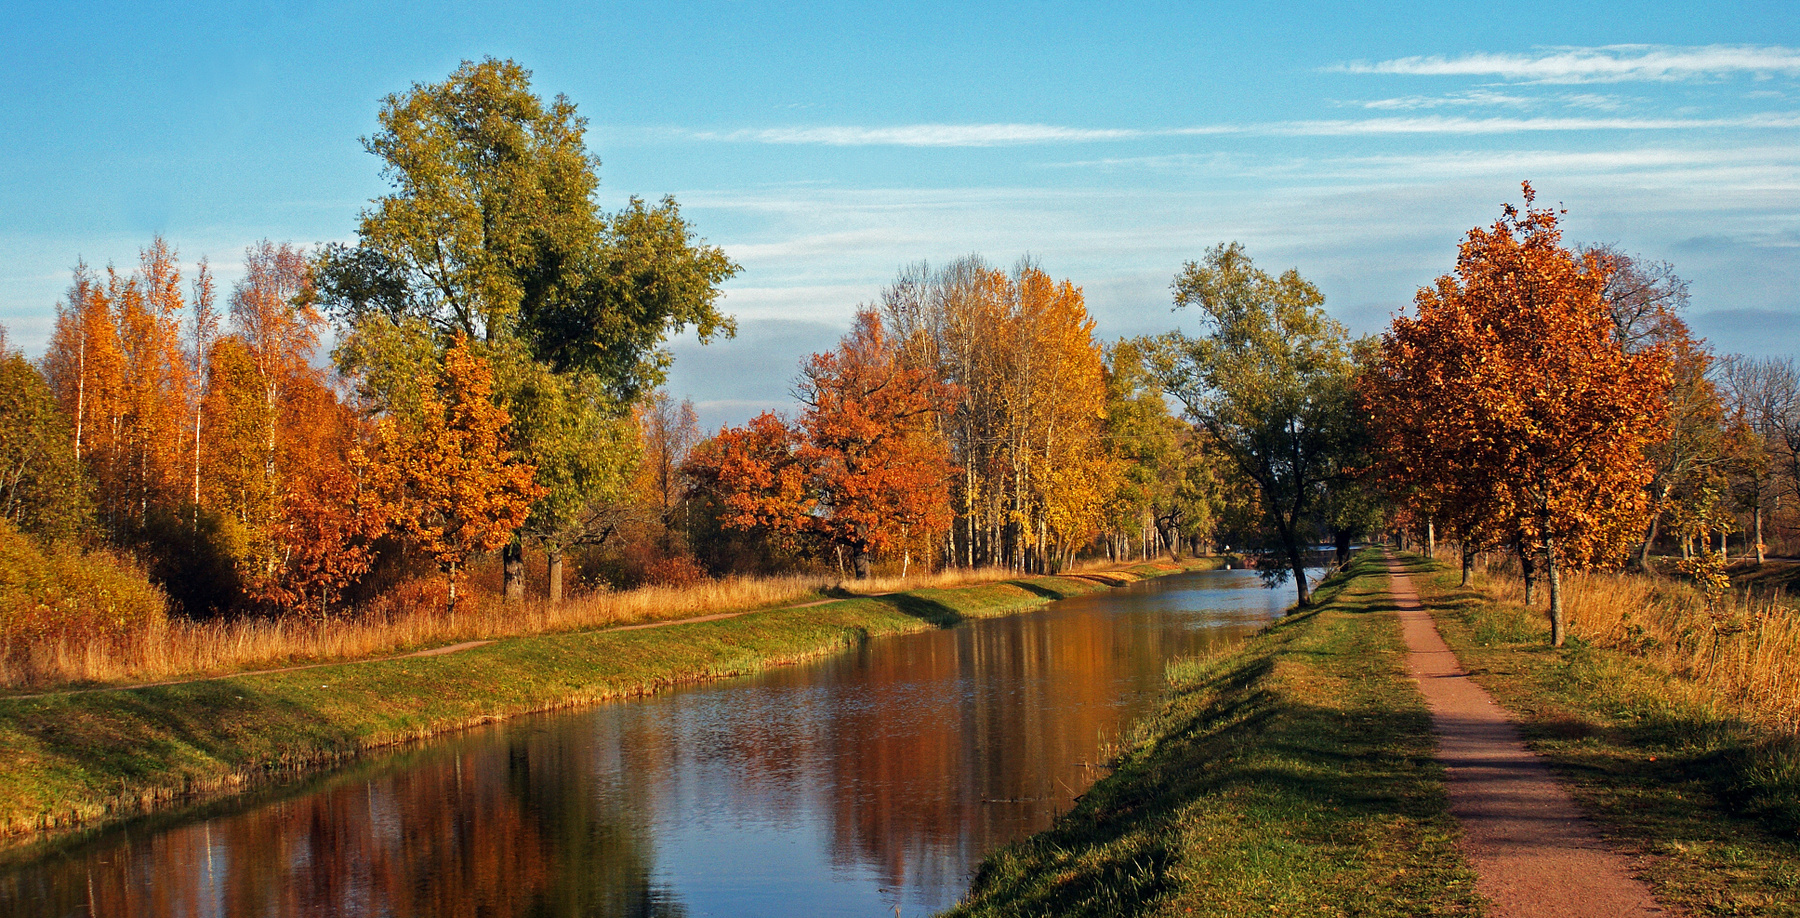 Старопетергофский канал 17 октября 2015 дорога канал луговой парк осень